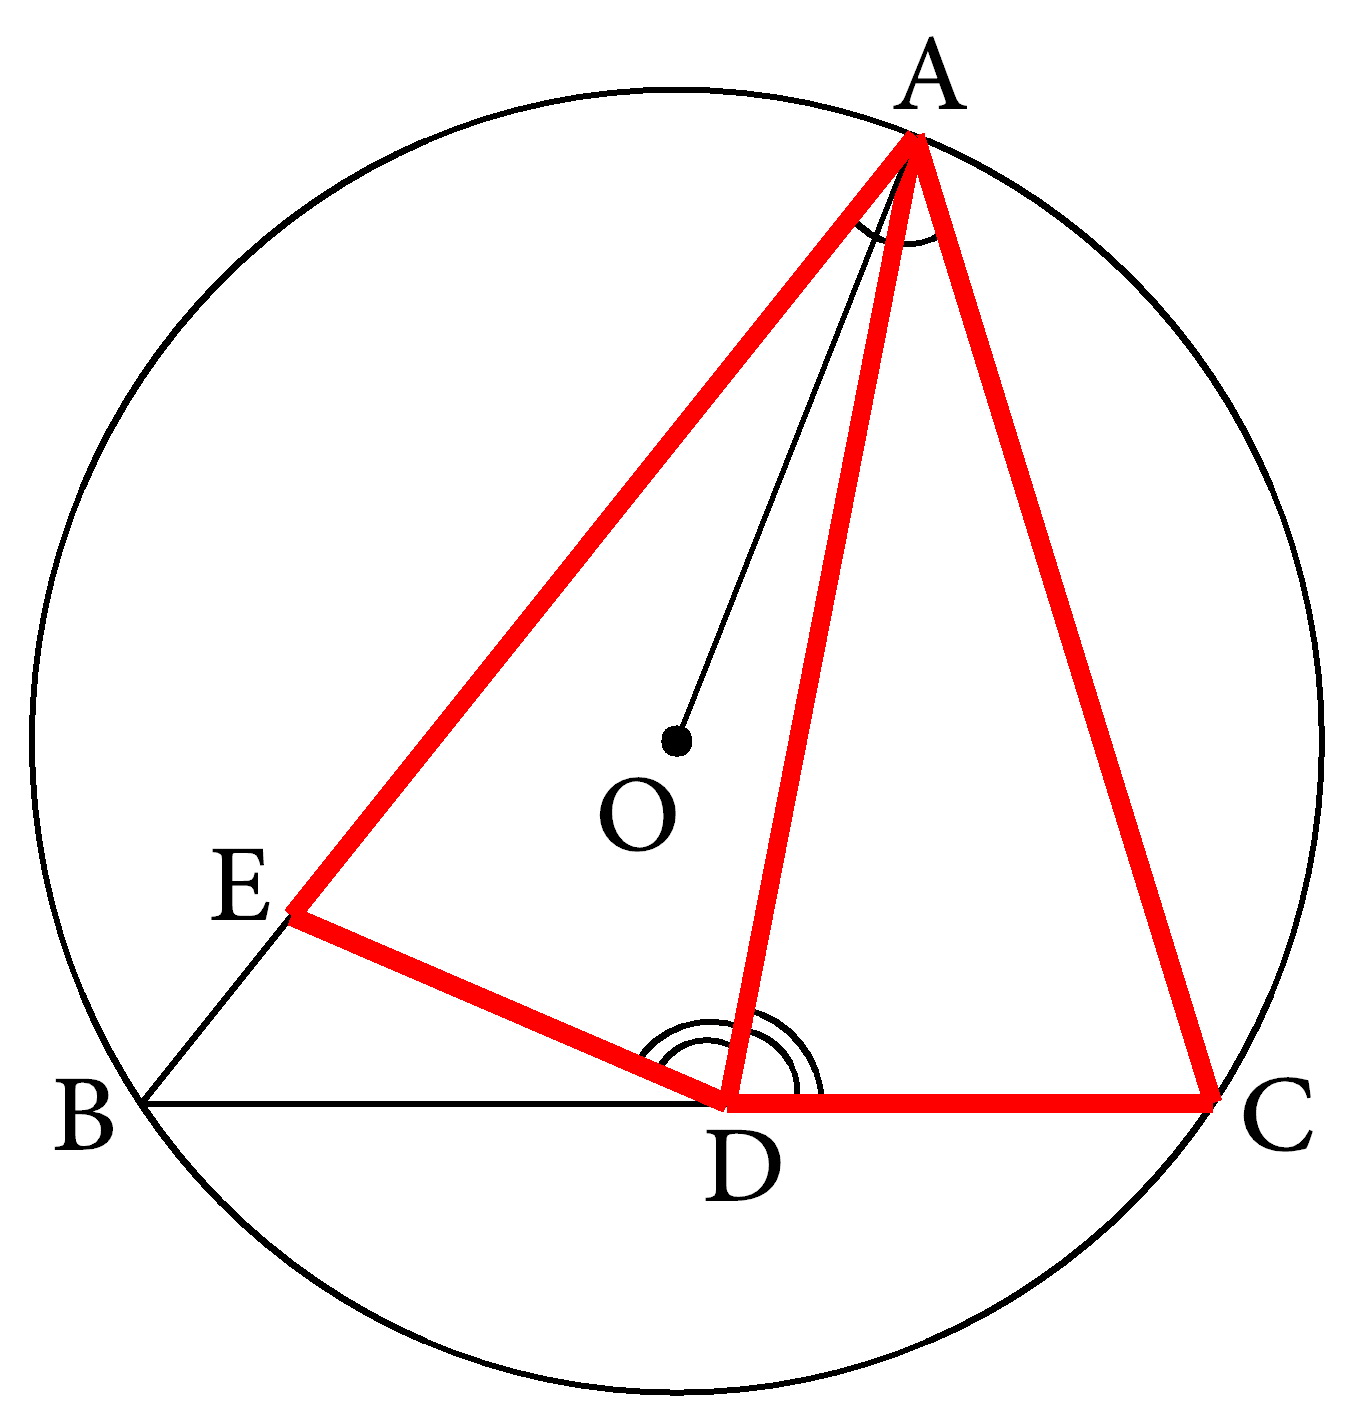 找不到关键的全等三角形先从对称轴出发寻找轴对称型全等